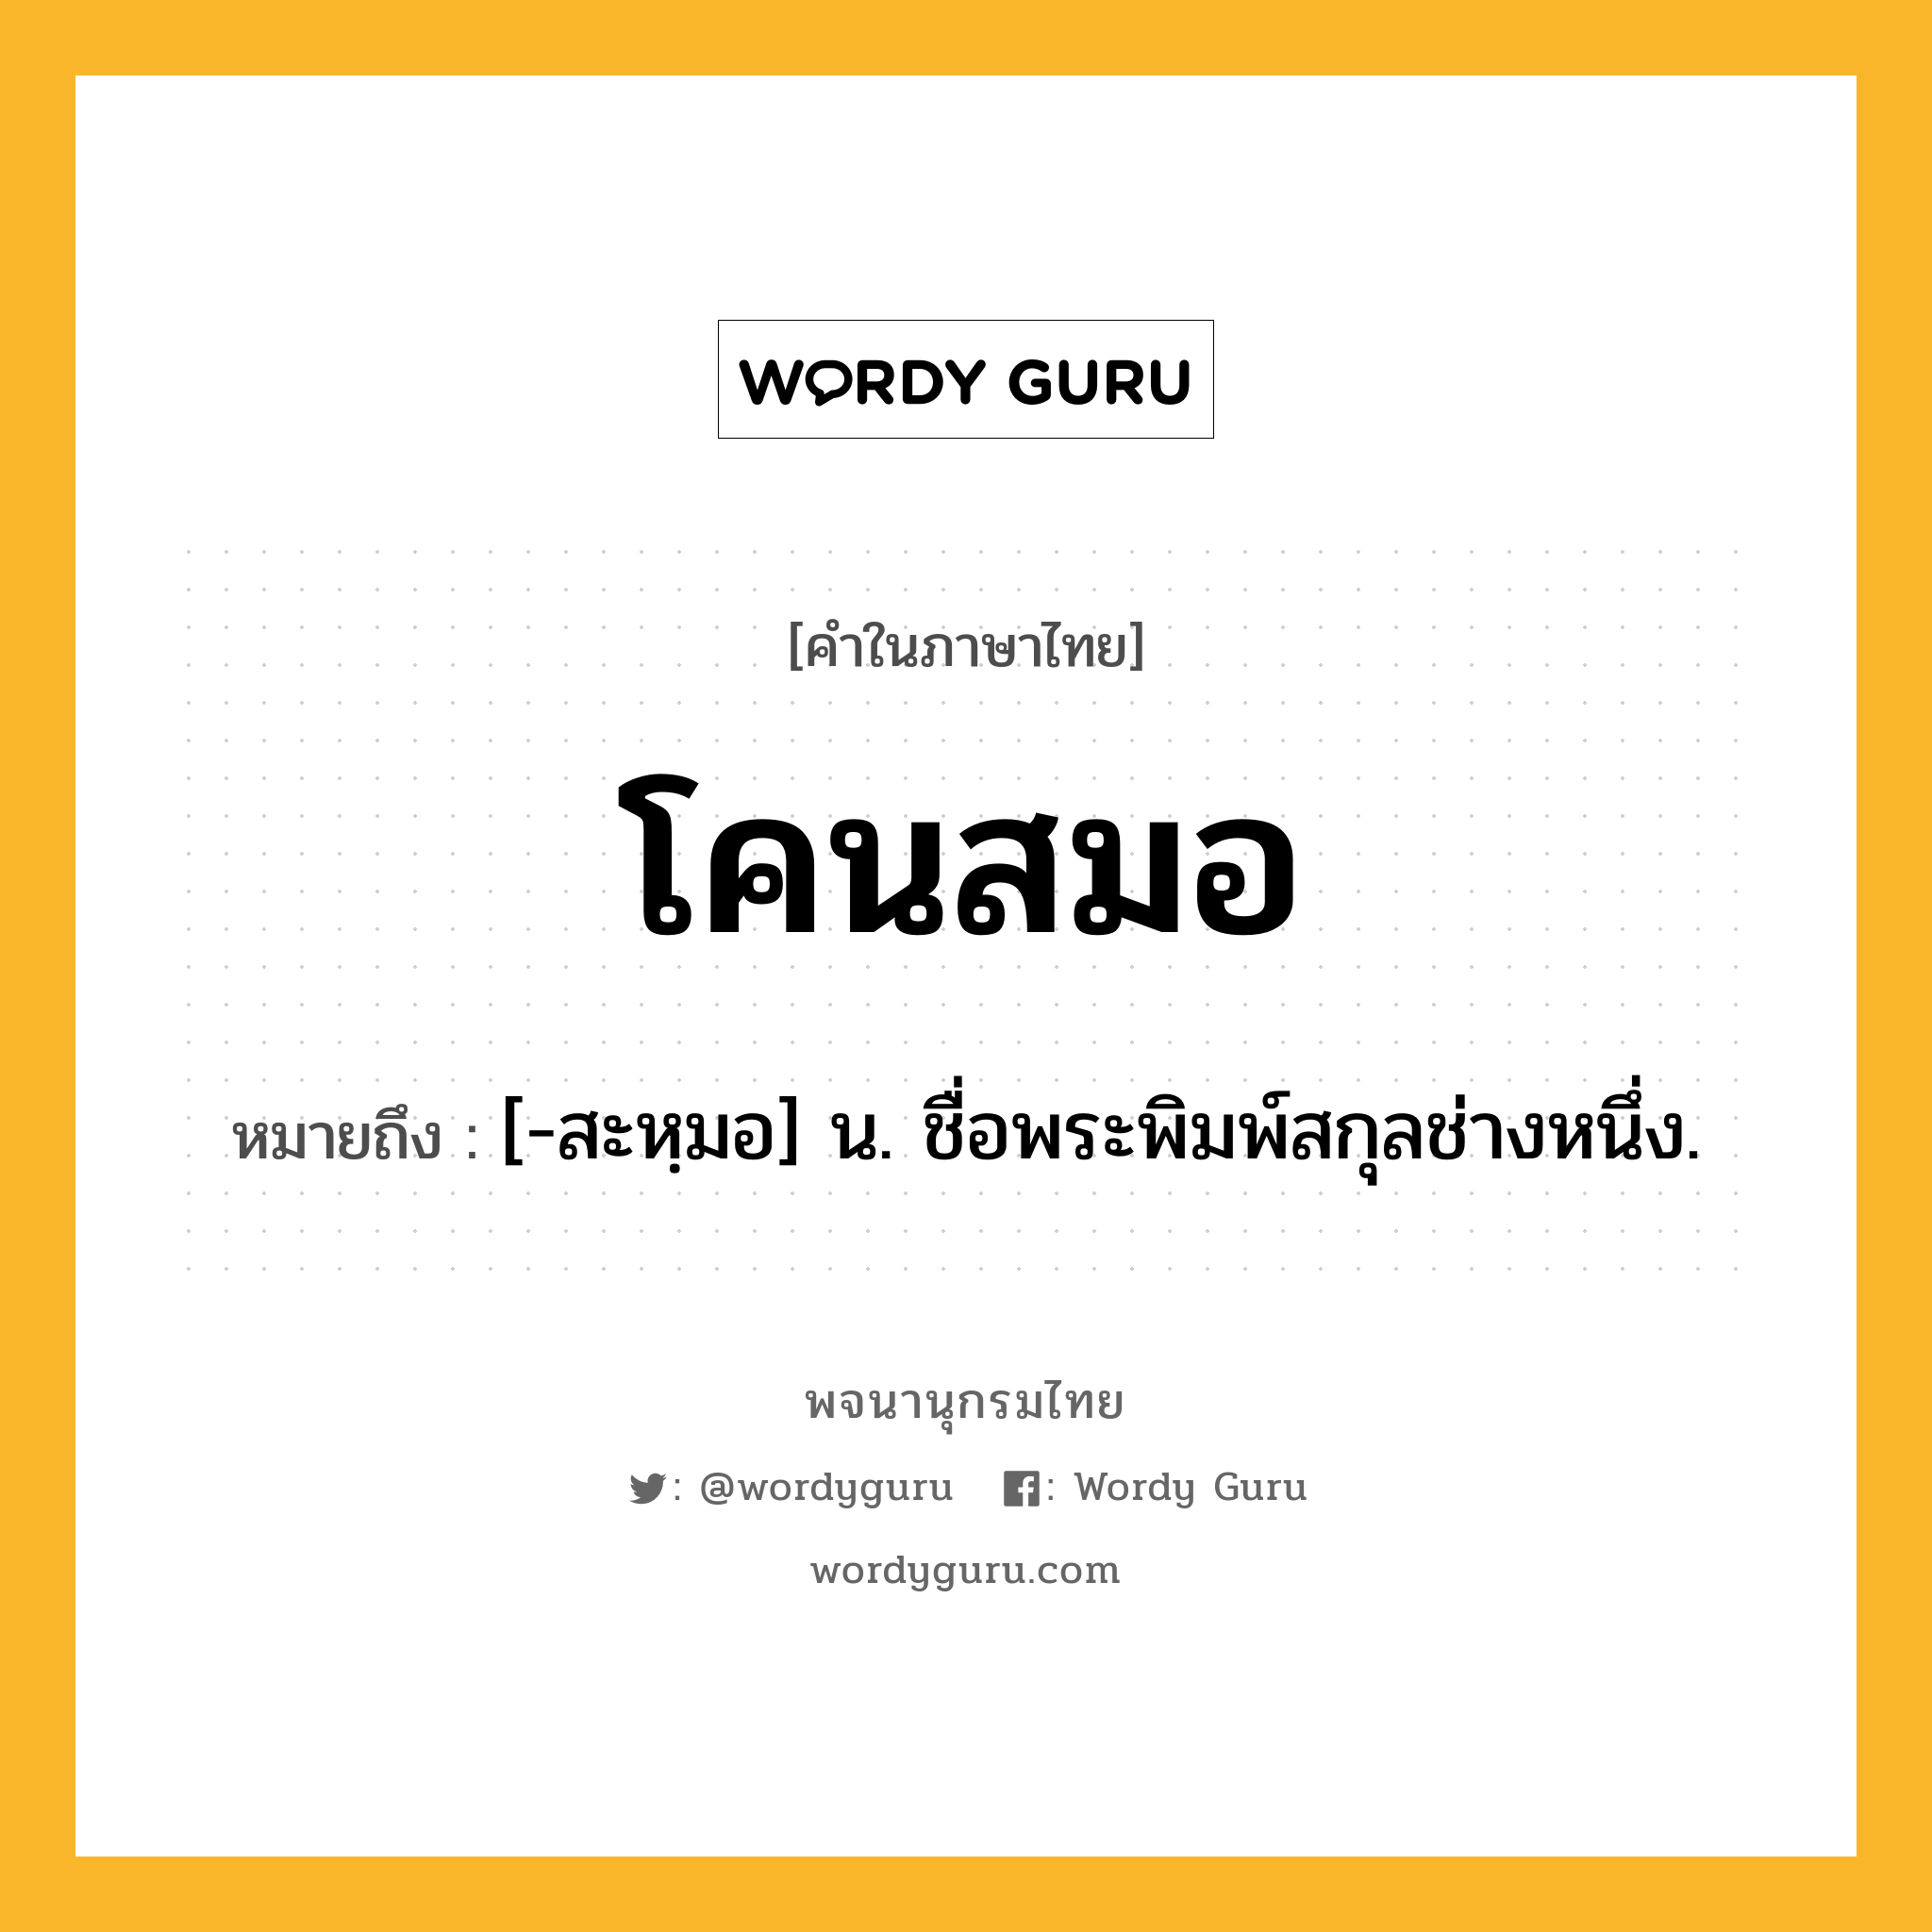 โคนสมอ หมายถึงอะไร?, คำในภาษาไทย โคนสมอ หมายถึง [-สะหฺมอ] น. ชื่อพระพิมพ์สกุลช่างหนึ่ง.